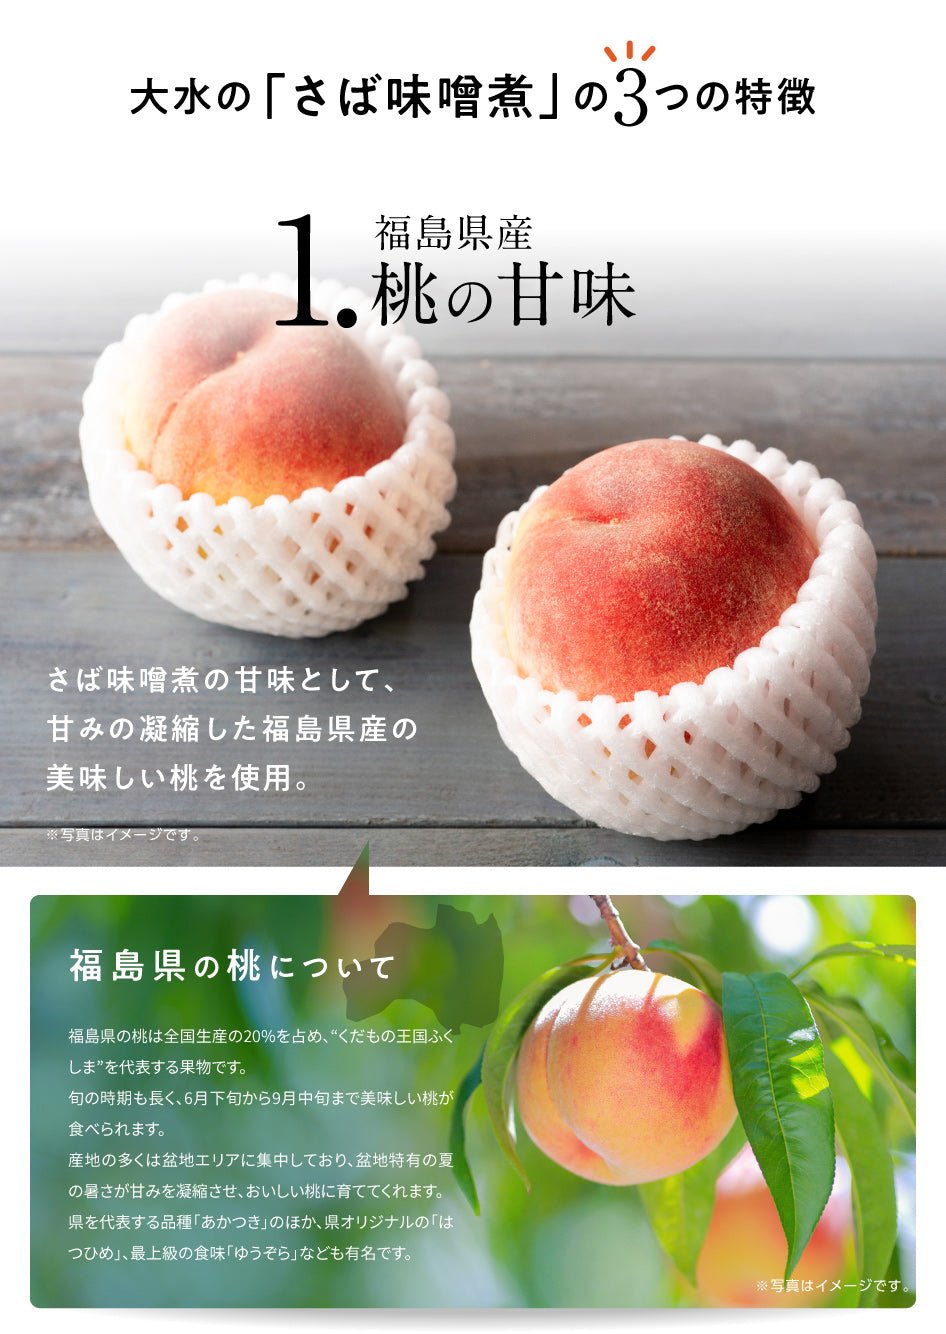 桃の甘みでおいしい さば味噌煮セット - ふくしま市場｜福島県産品オンラインストア